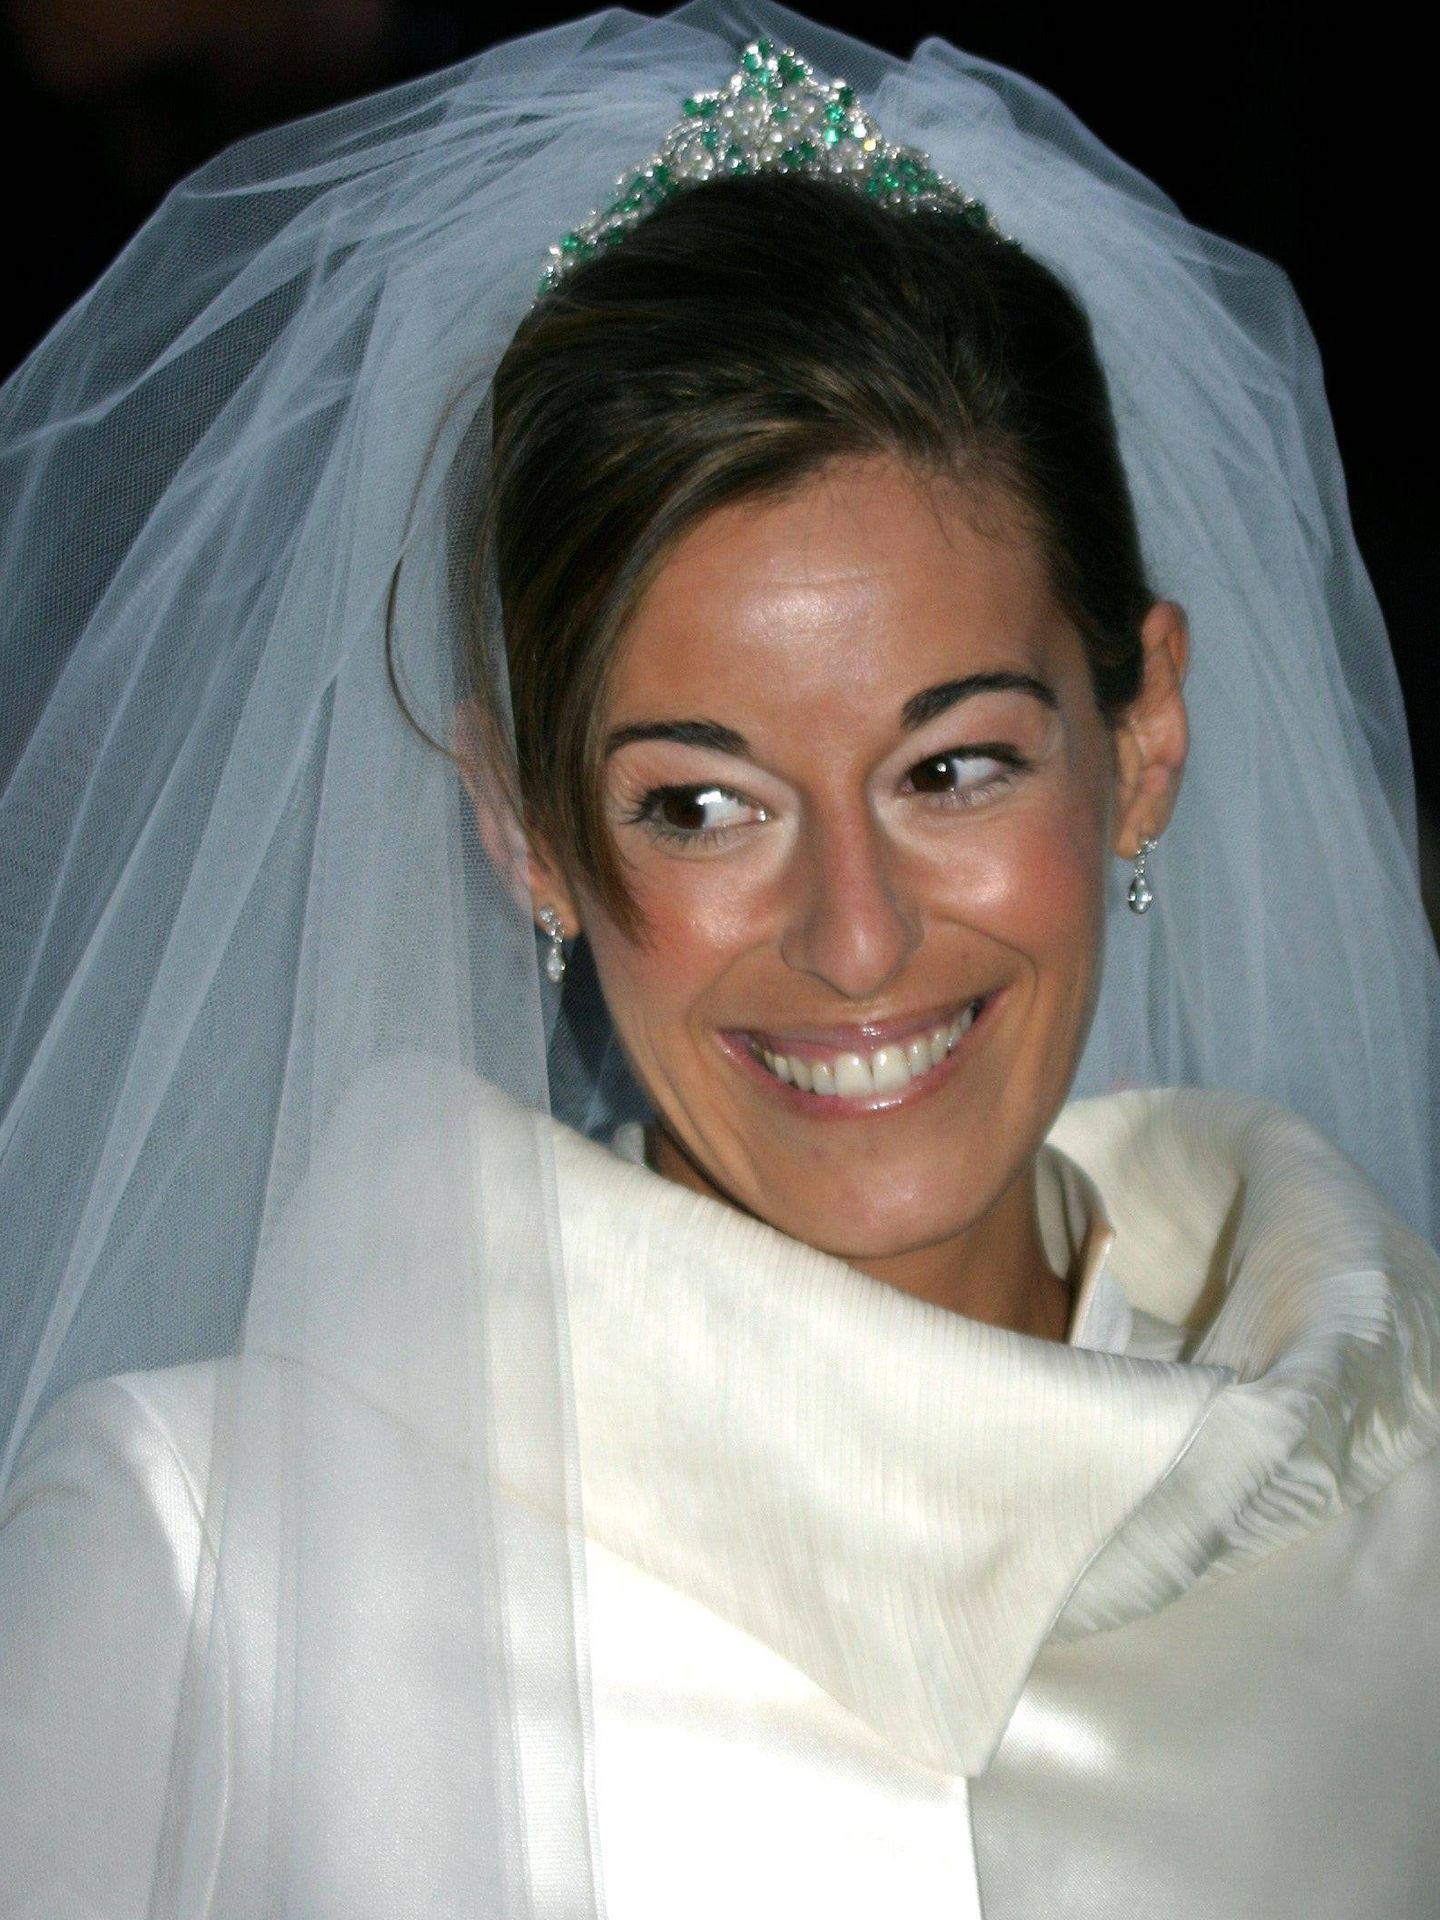 Mónica Martín Luque, luciendo las esmeraldas como tiara el día de su boda. (Gtres)